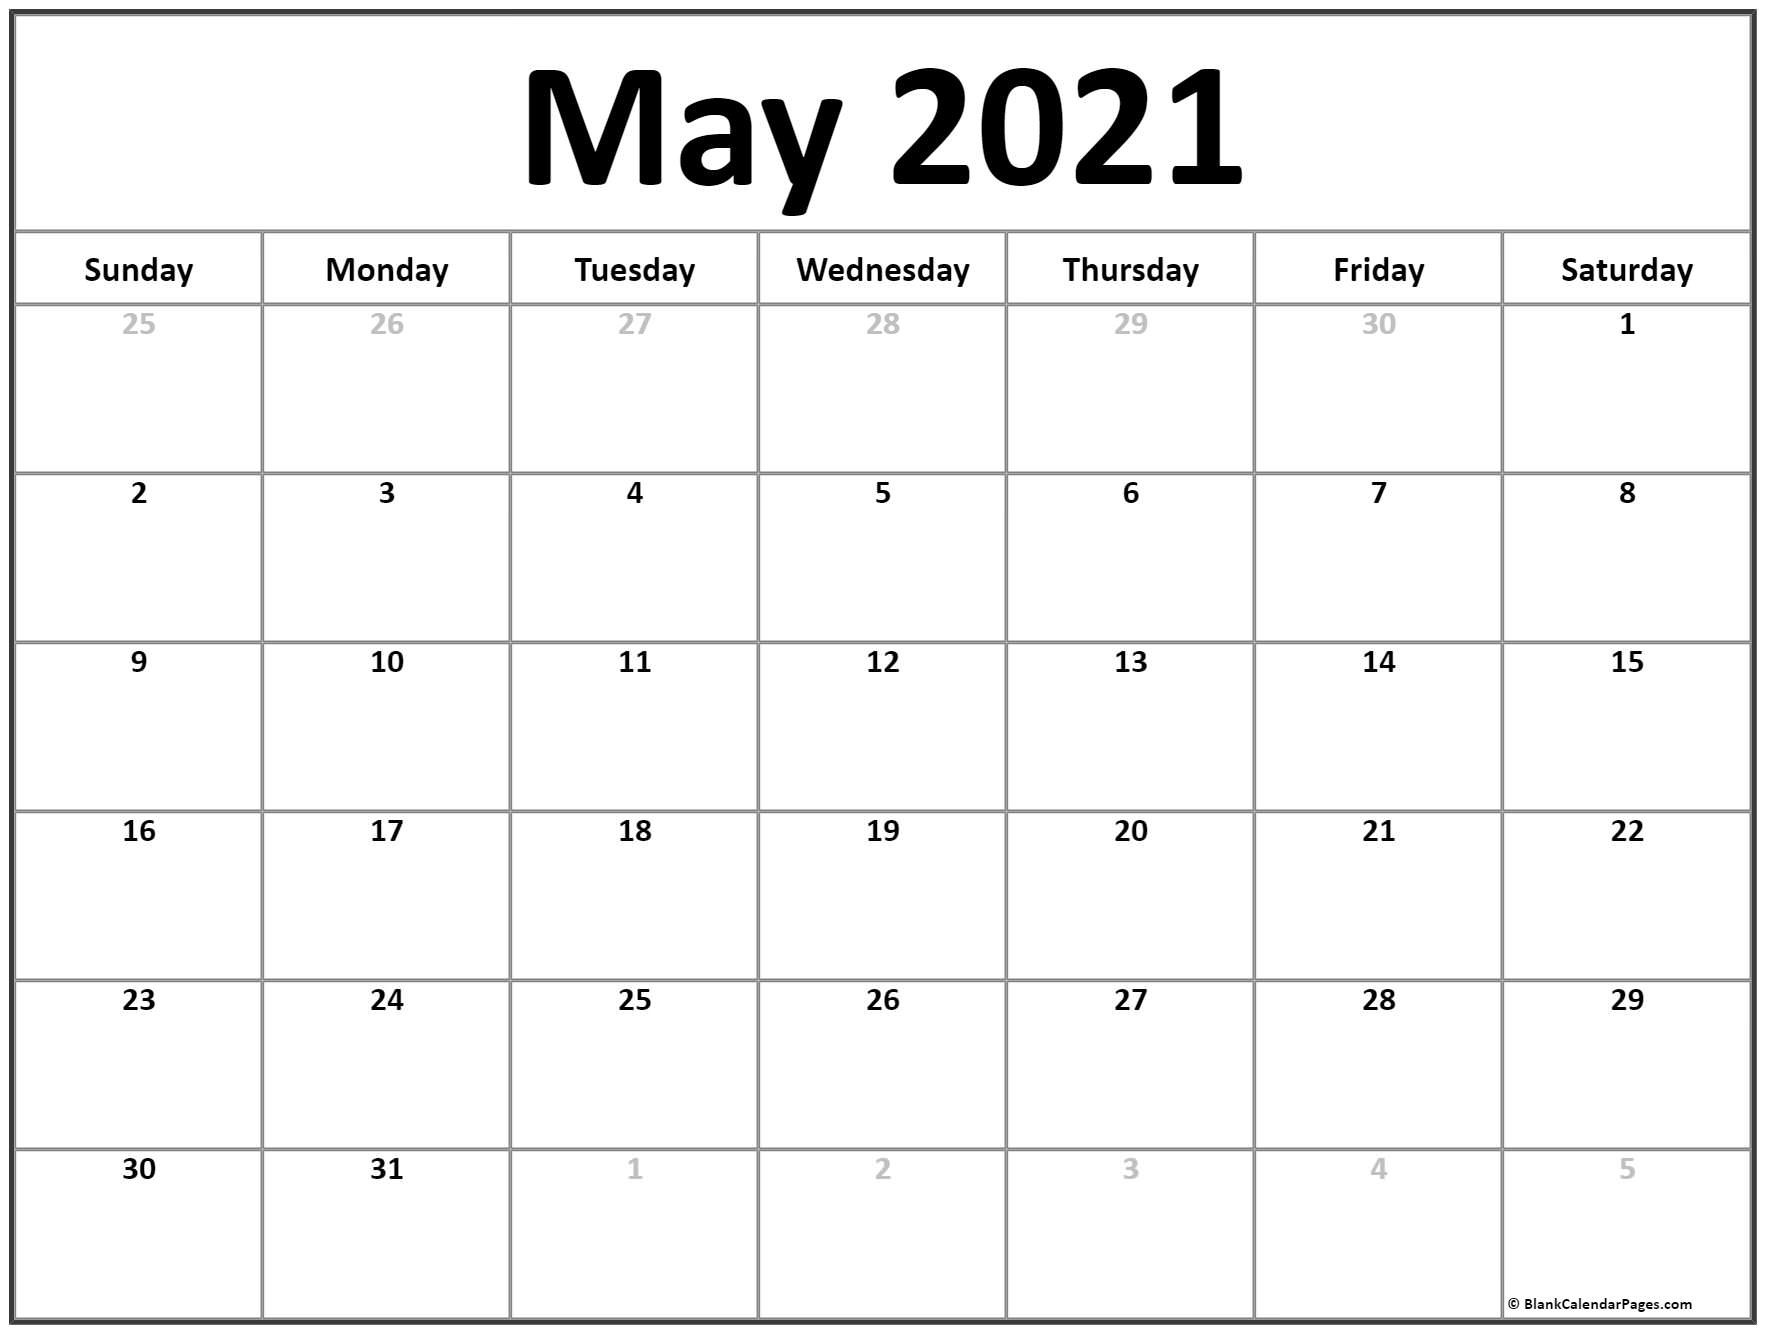 CAL=May 2021 calendar